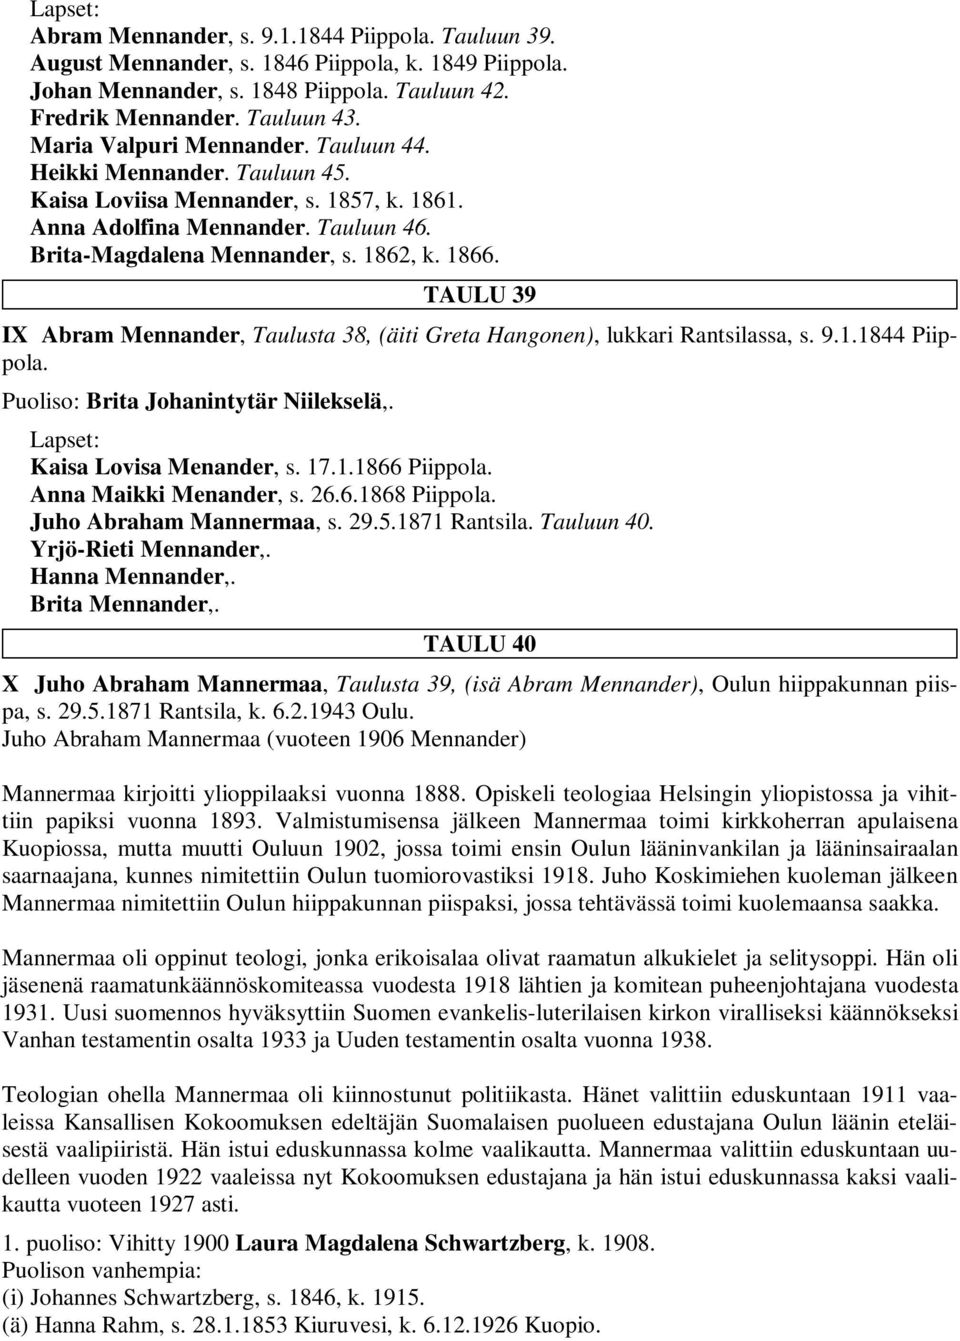 TAULU 39 IX Abram Mennander, Taulusta 38, (äiti Greta Hangonen), lukkari Rantsilassa, s. 9.1.1844 Piippola. Puoliso: Brita Johanintytär Niilekselä,. Kaisa Lovisa Menander, s. 17.1.1866 Piippola.